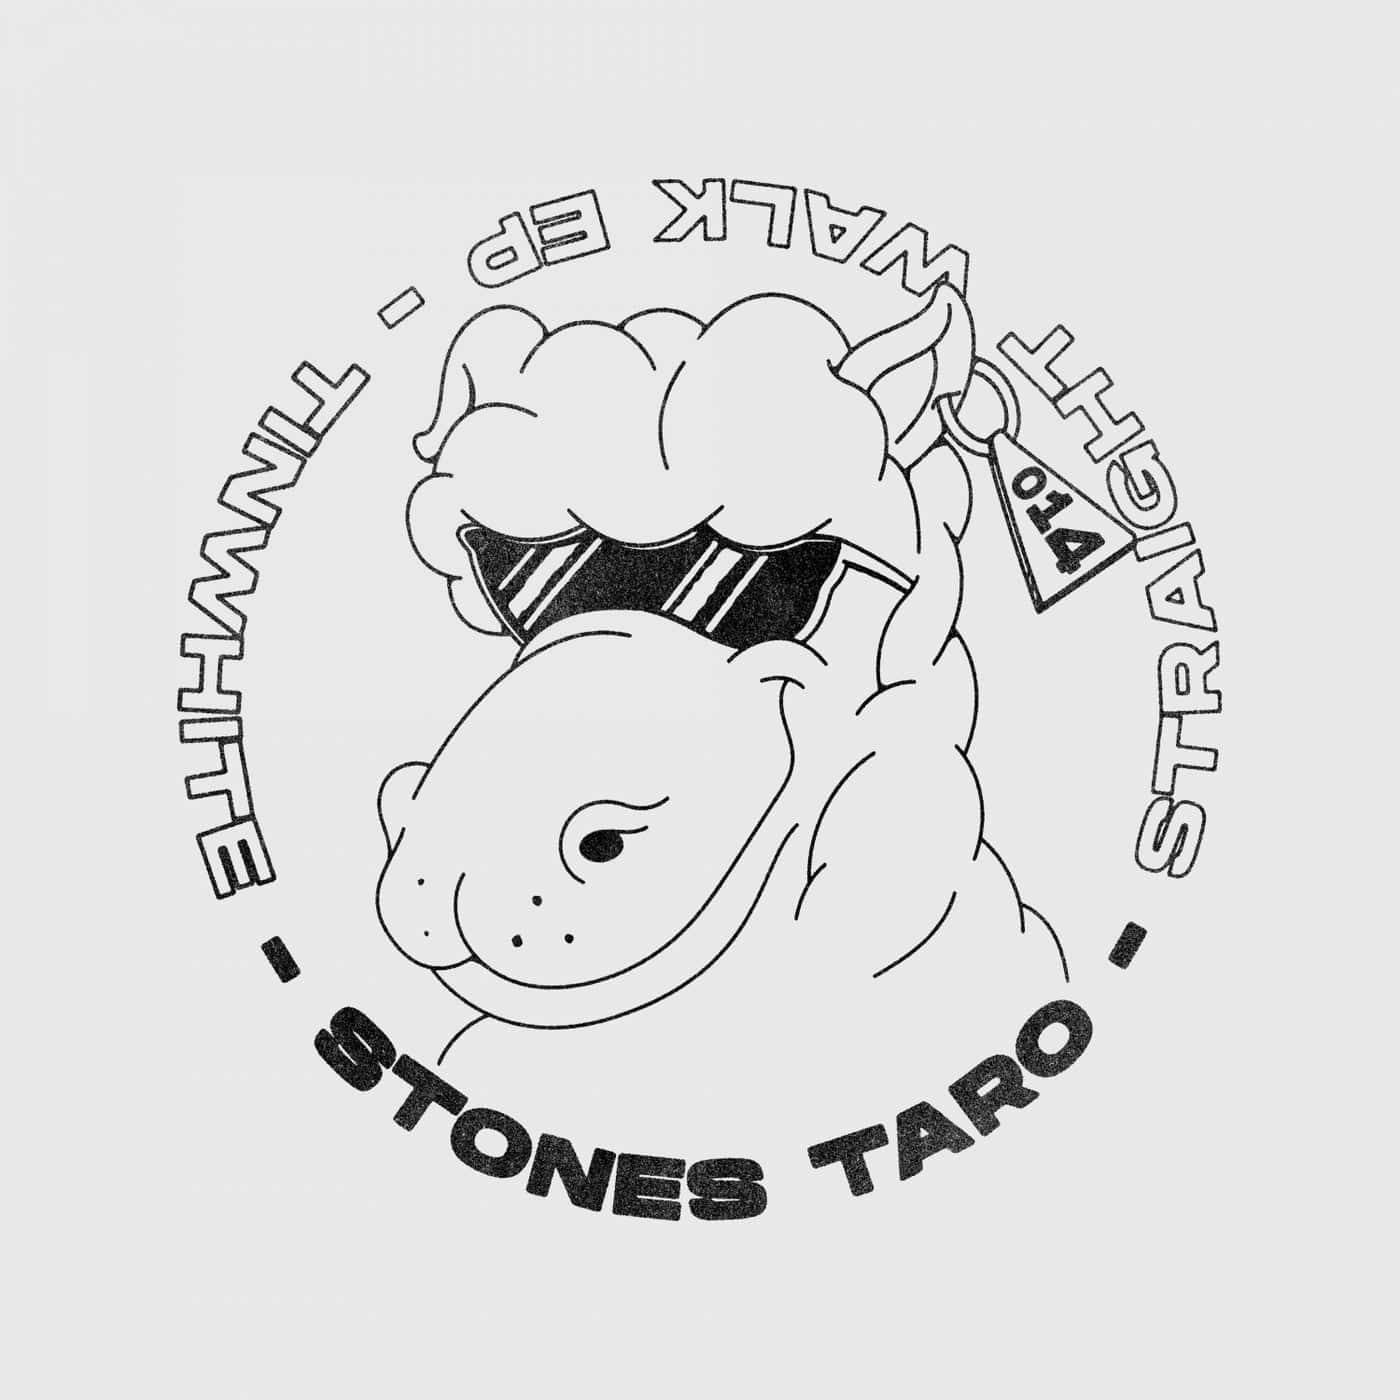 Download Stones Taro - Straight Walk on Electrobuzz